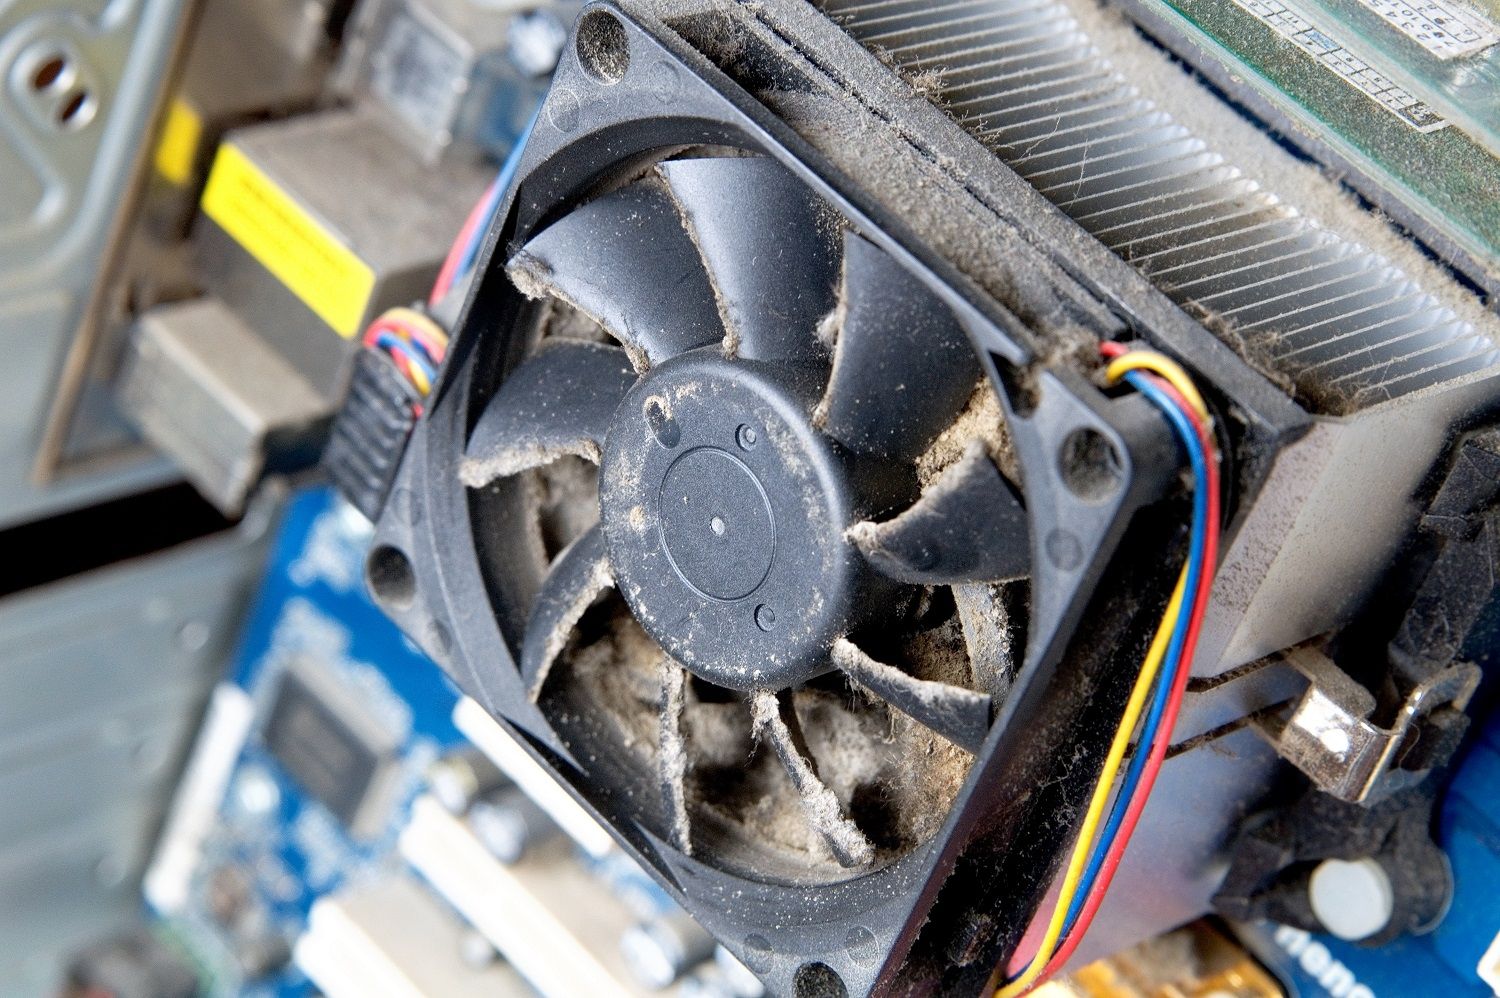 Comment éliminer la poussière de votre PC